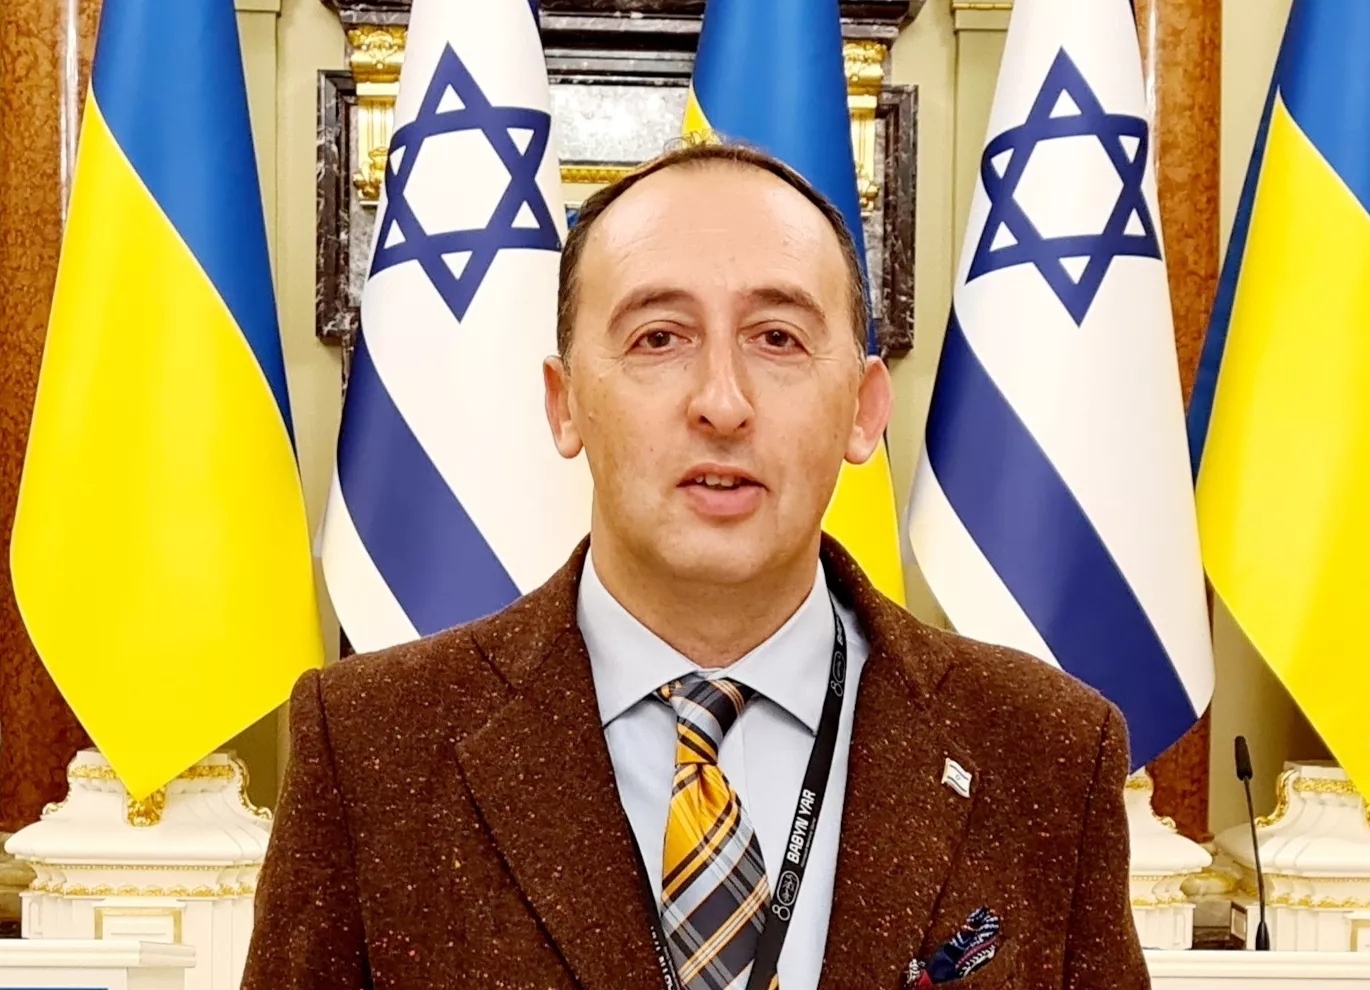 Шимон Бріман: "Керівництво Ізраїлю проводить наради щодо надання Україні допомоги у військовій сфері". Фото: Facebook